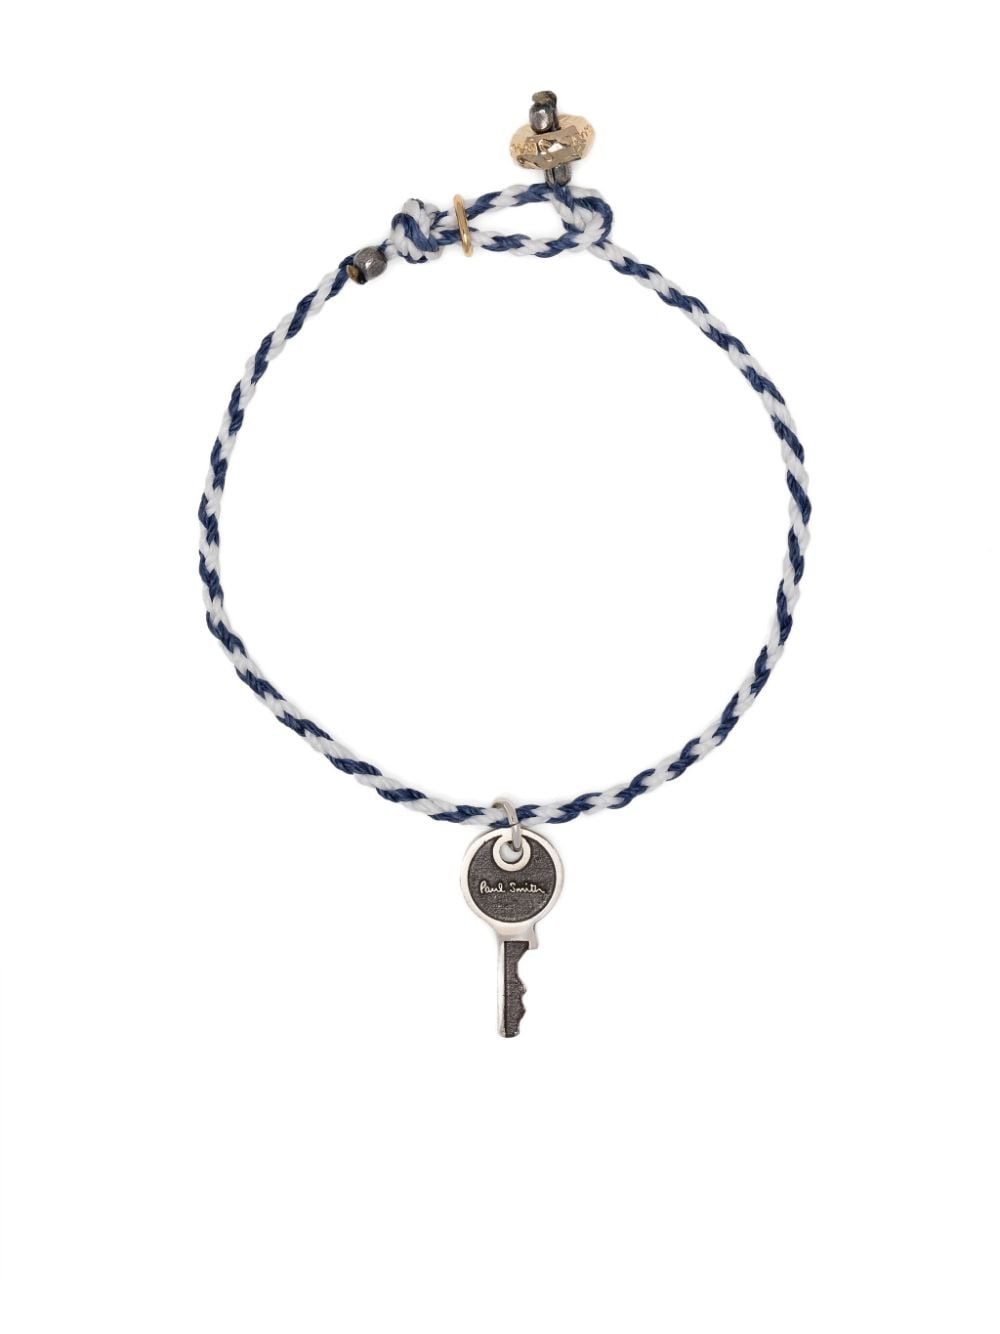 Paul Smith Key Pendant Bracelet In Blue